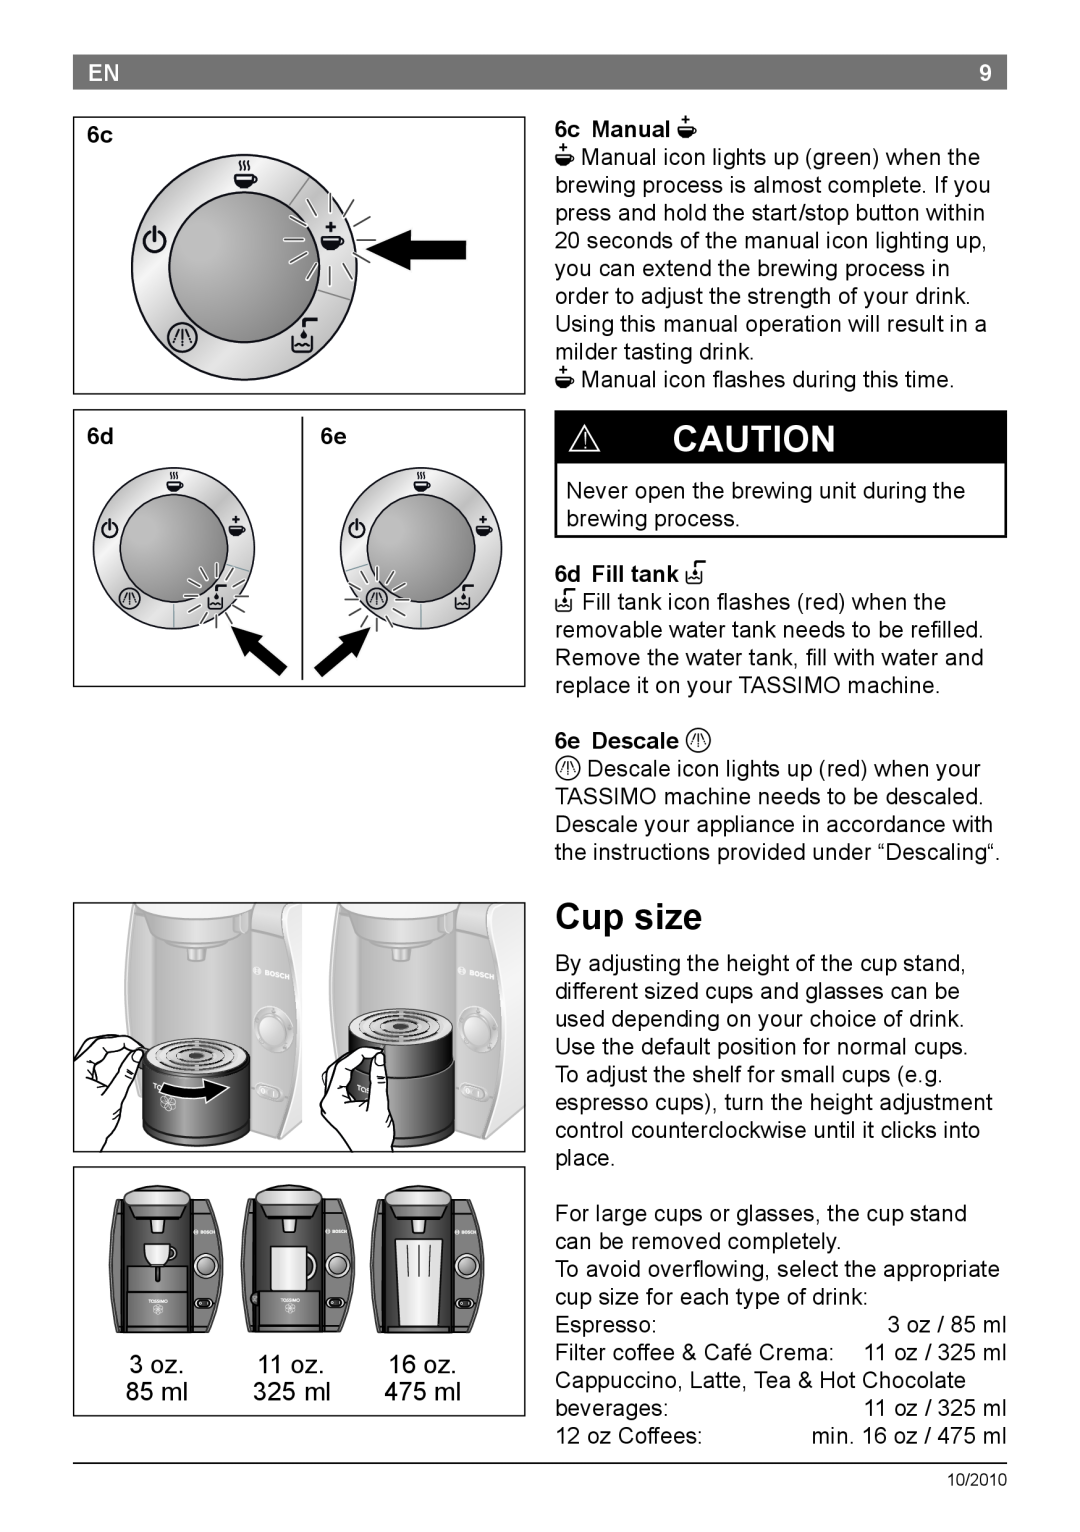 Bosch Appliances T45 Cup size, 16 oz, 85 ml, 325 ml, 475 ml, 6c Manual N, 6d Fill tank P, 6e Descale Q, ! Caution 